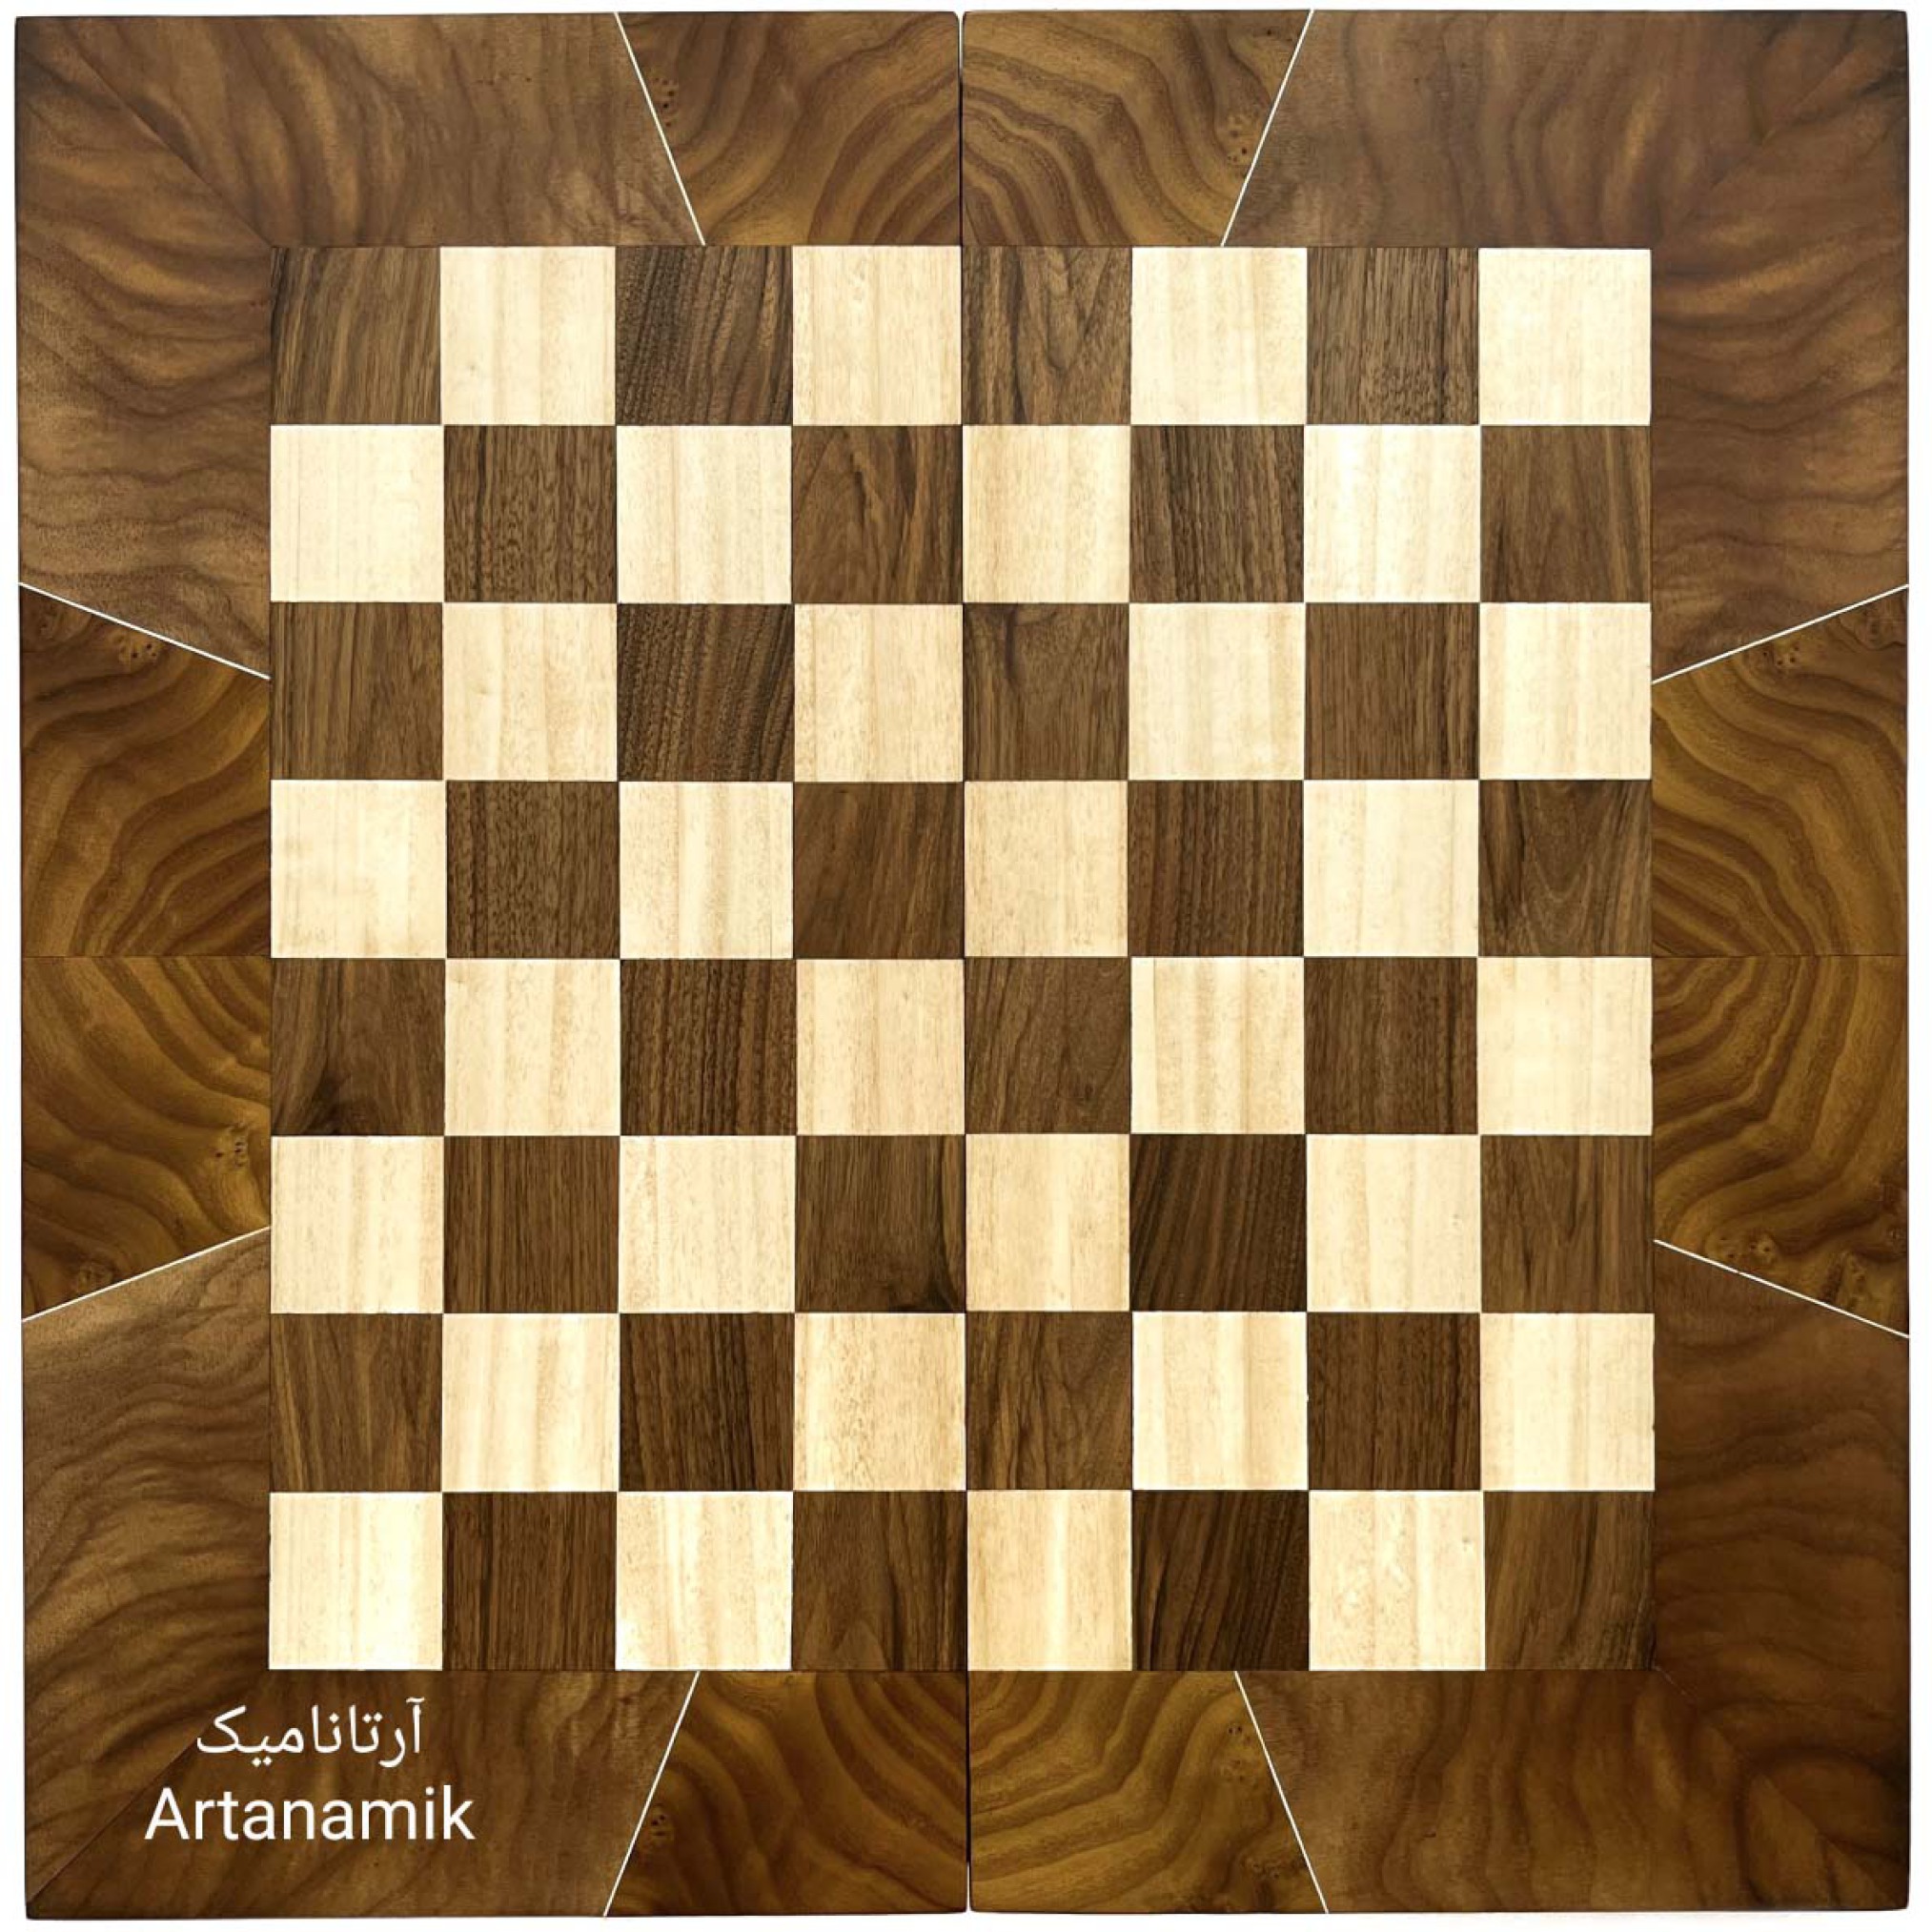  شطرنج و تخته نرد چوب گردو با کیفیت 